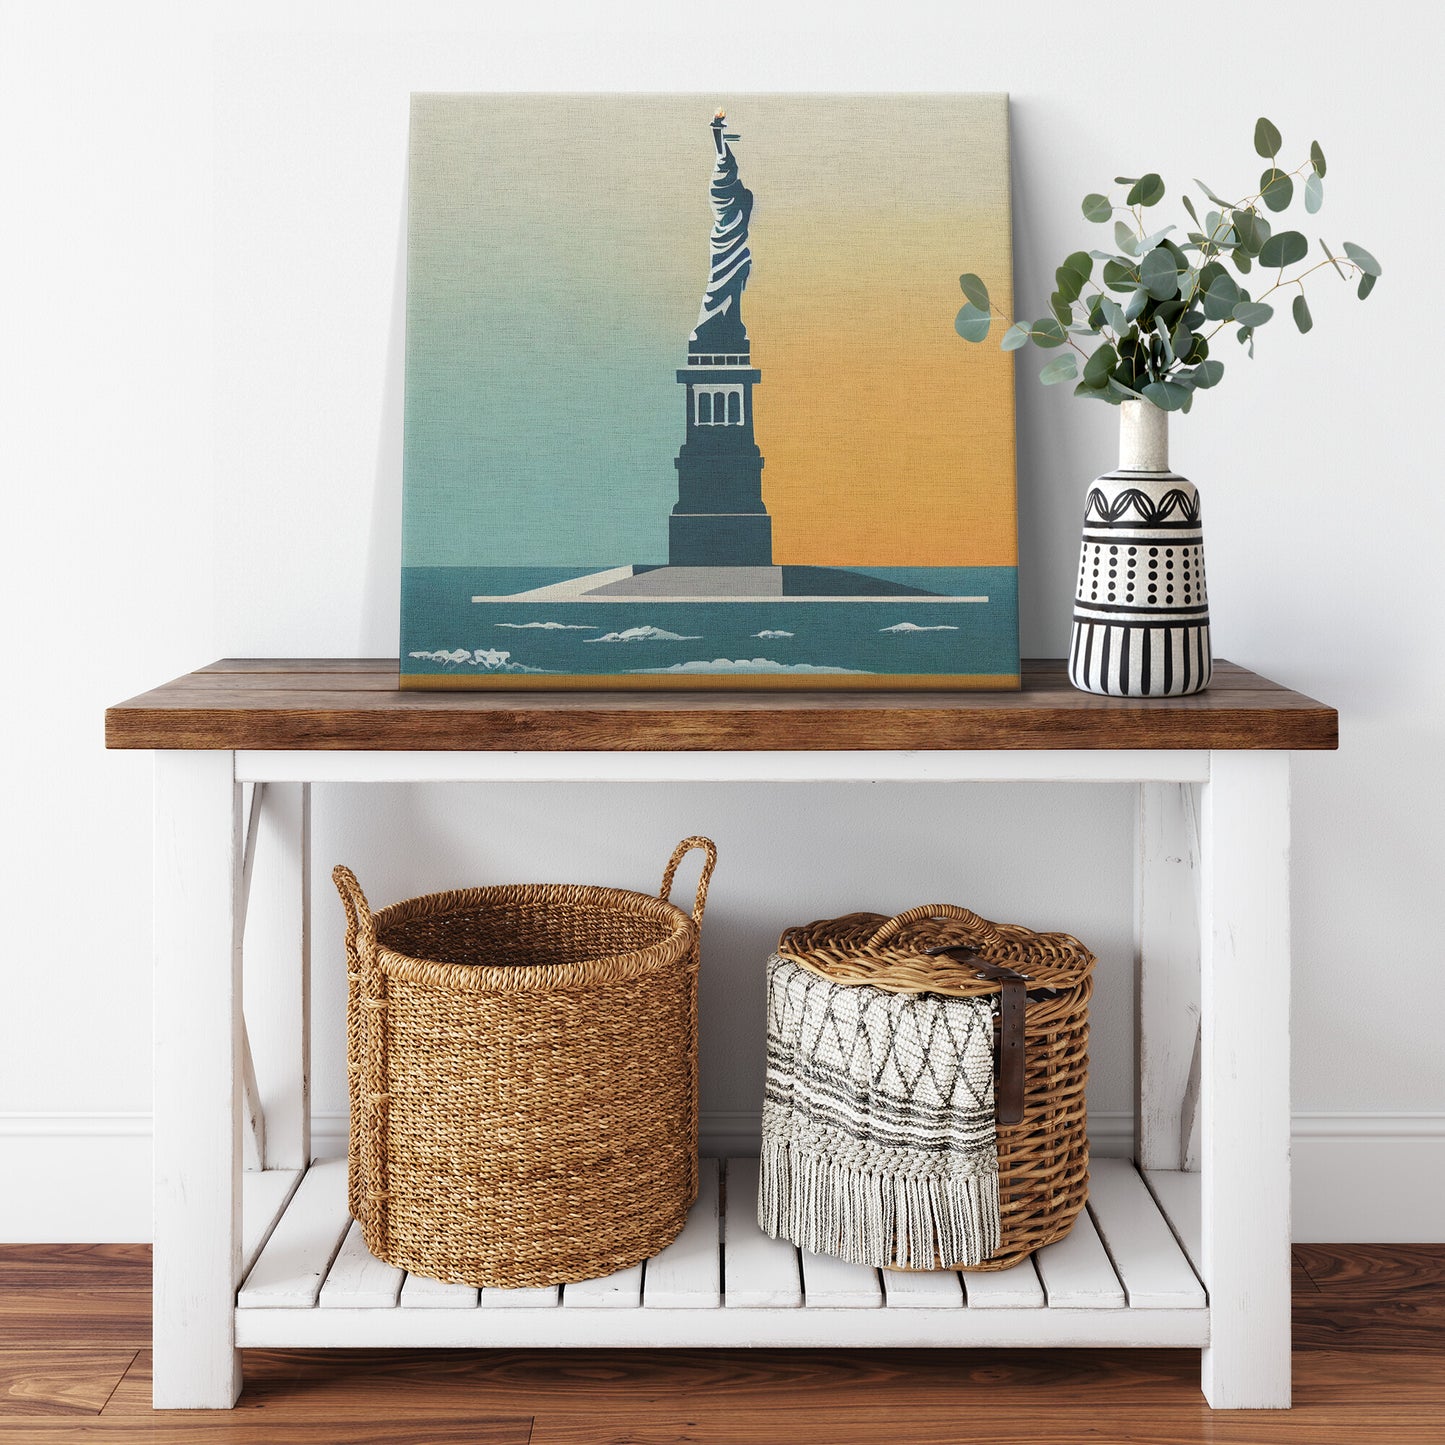 Statue of Liberty Minimalist Print, Statue of Liberty Wall Art